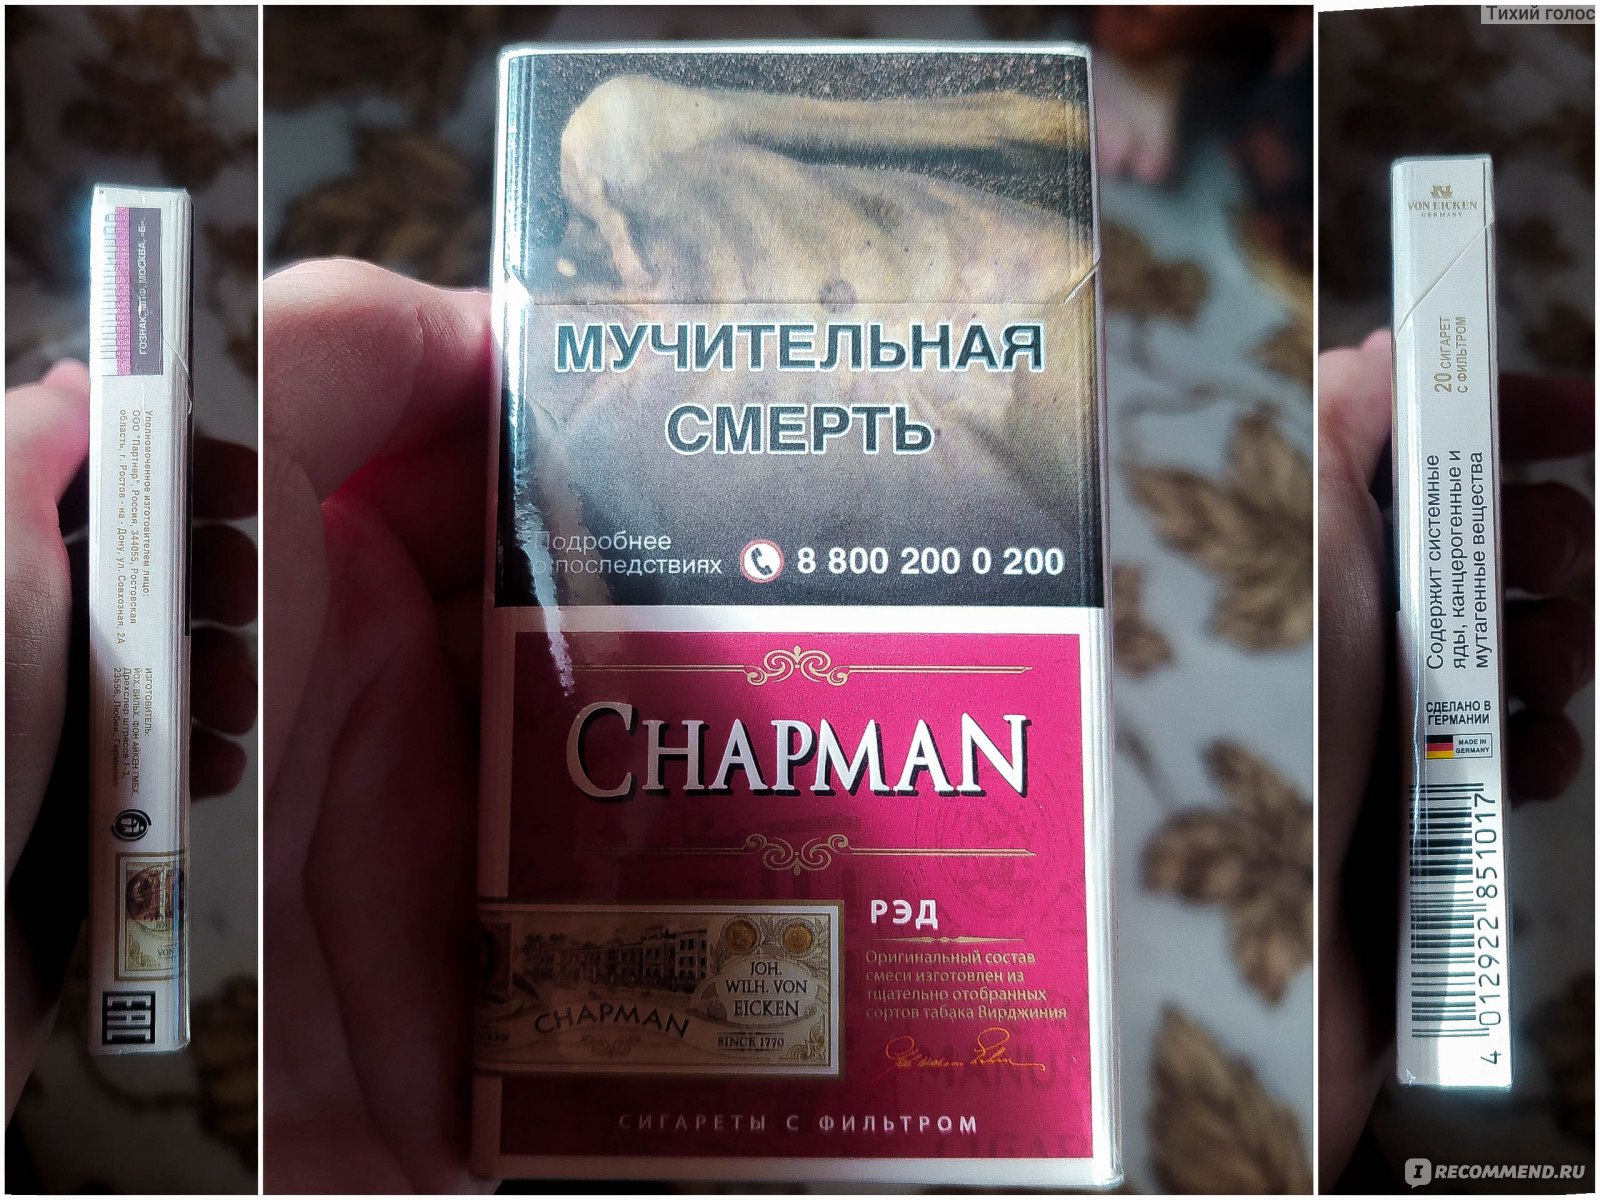 Chapman сигареты вкусы